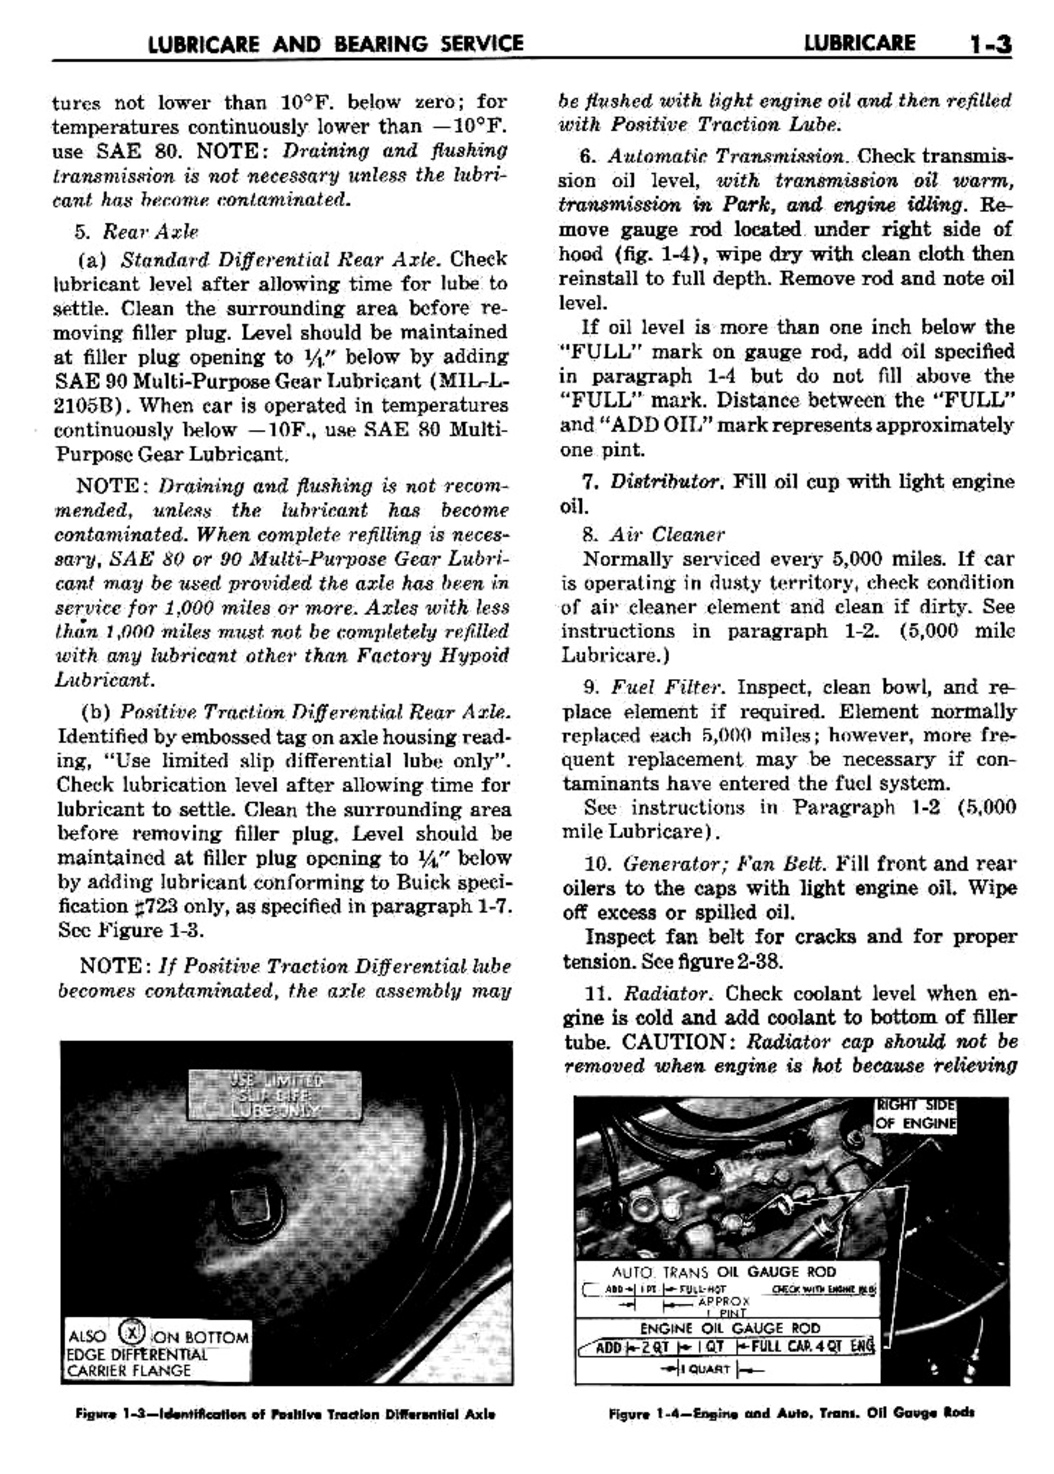 n_02 1960 Buick Shop Manual - Lubricare-003-003.jpg